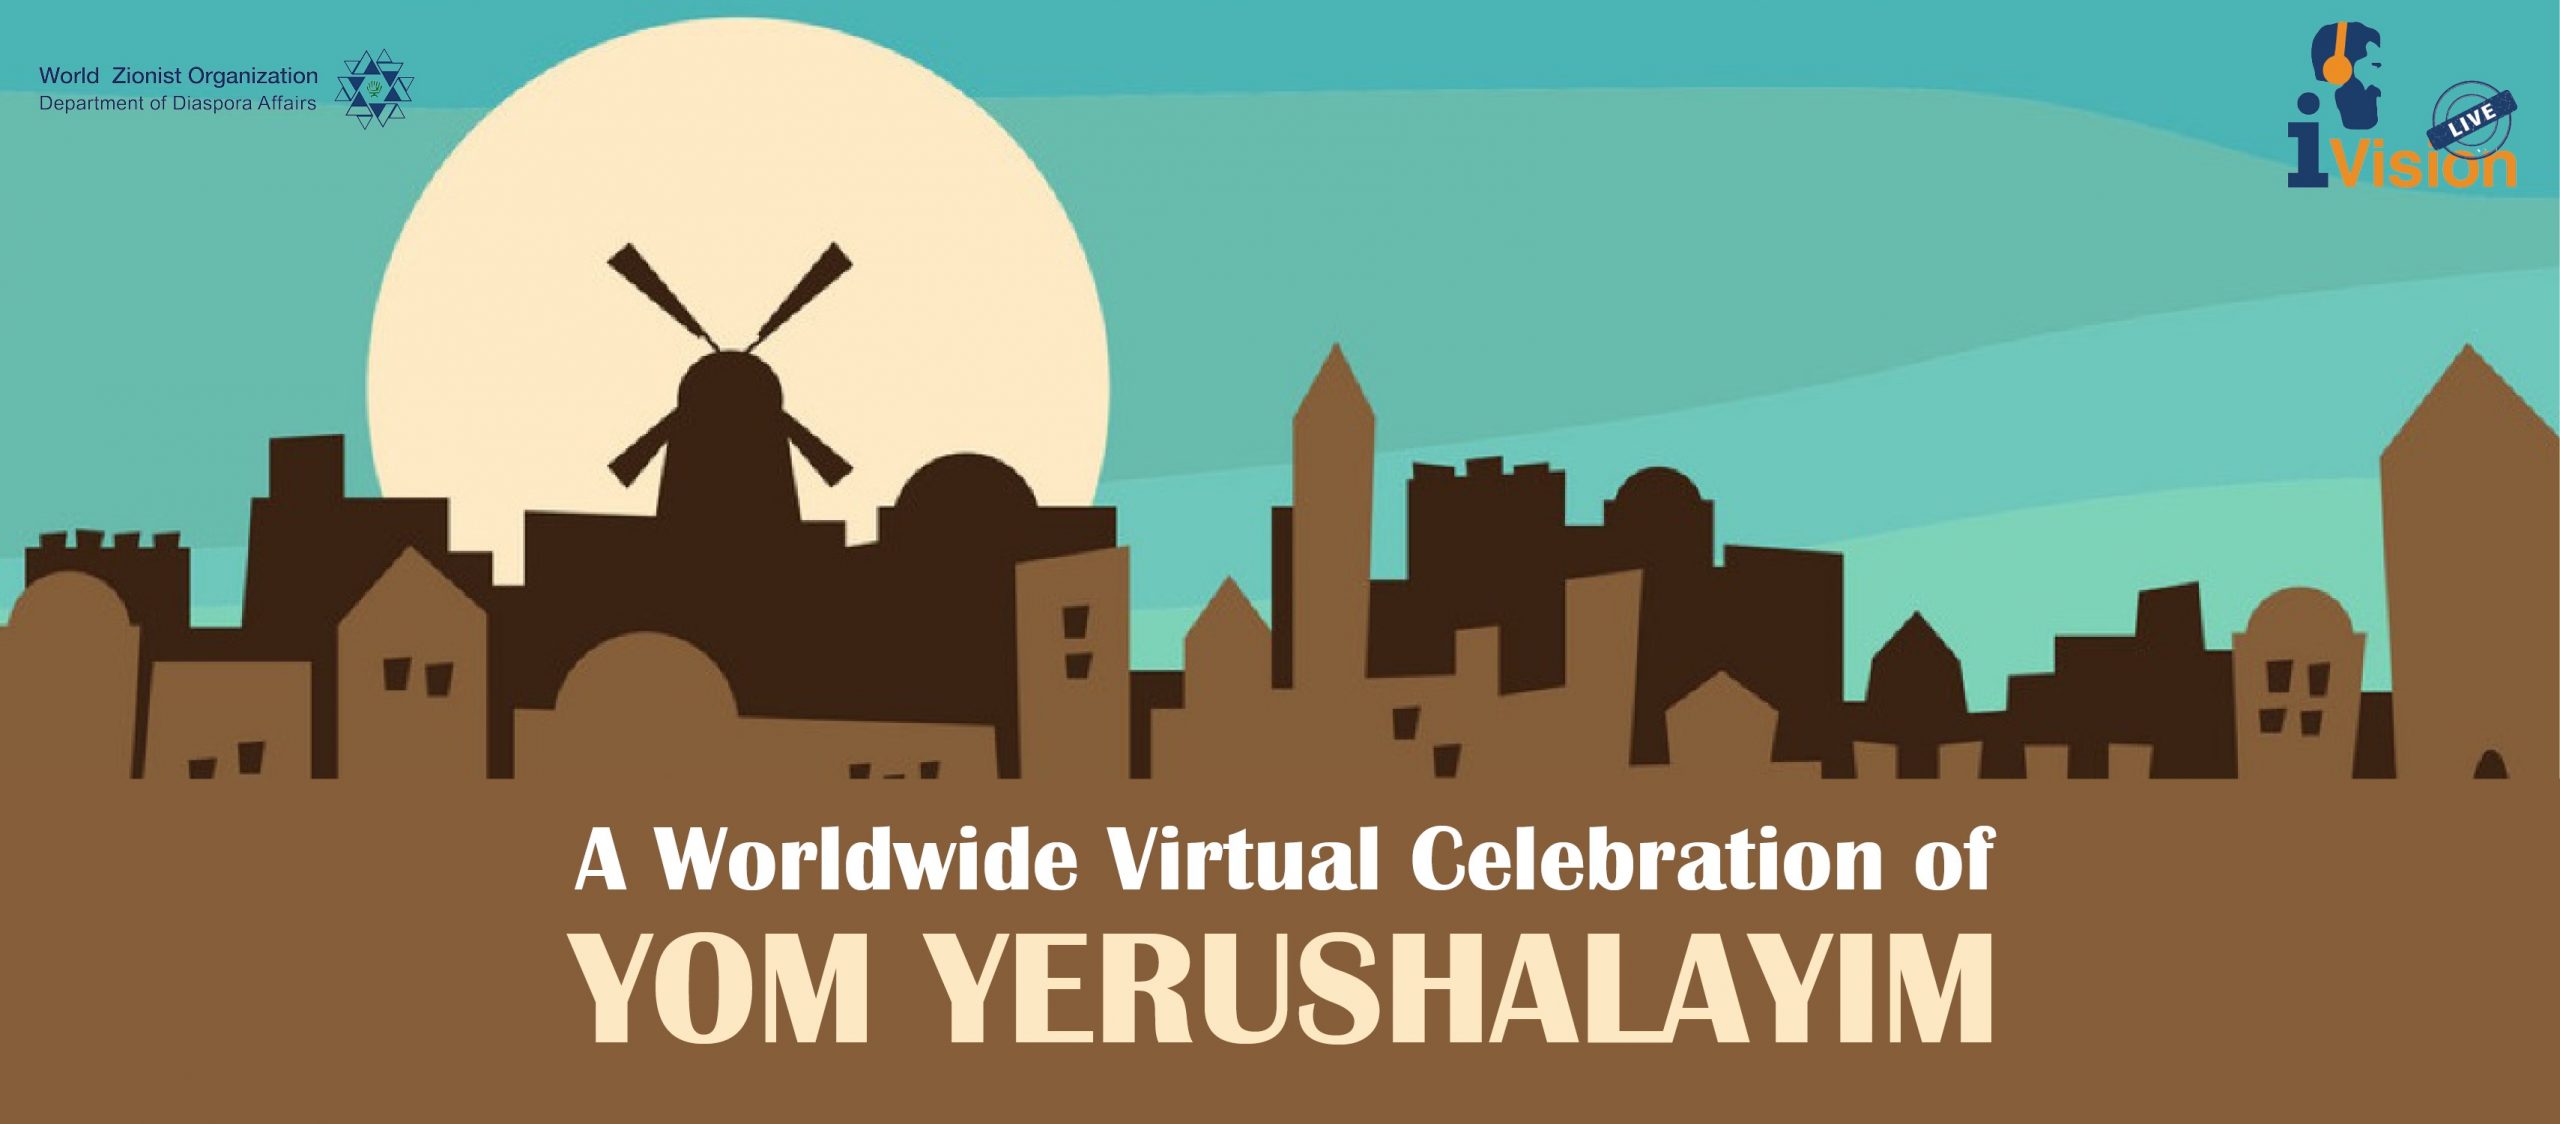 A Worldwide Virtual Celebration of Yom Yerushalayim American Zionist